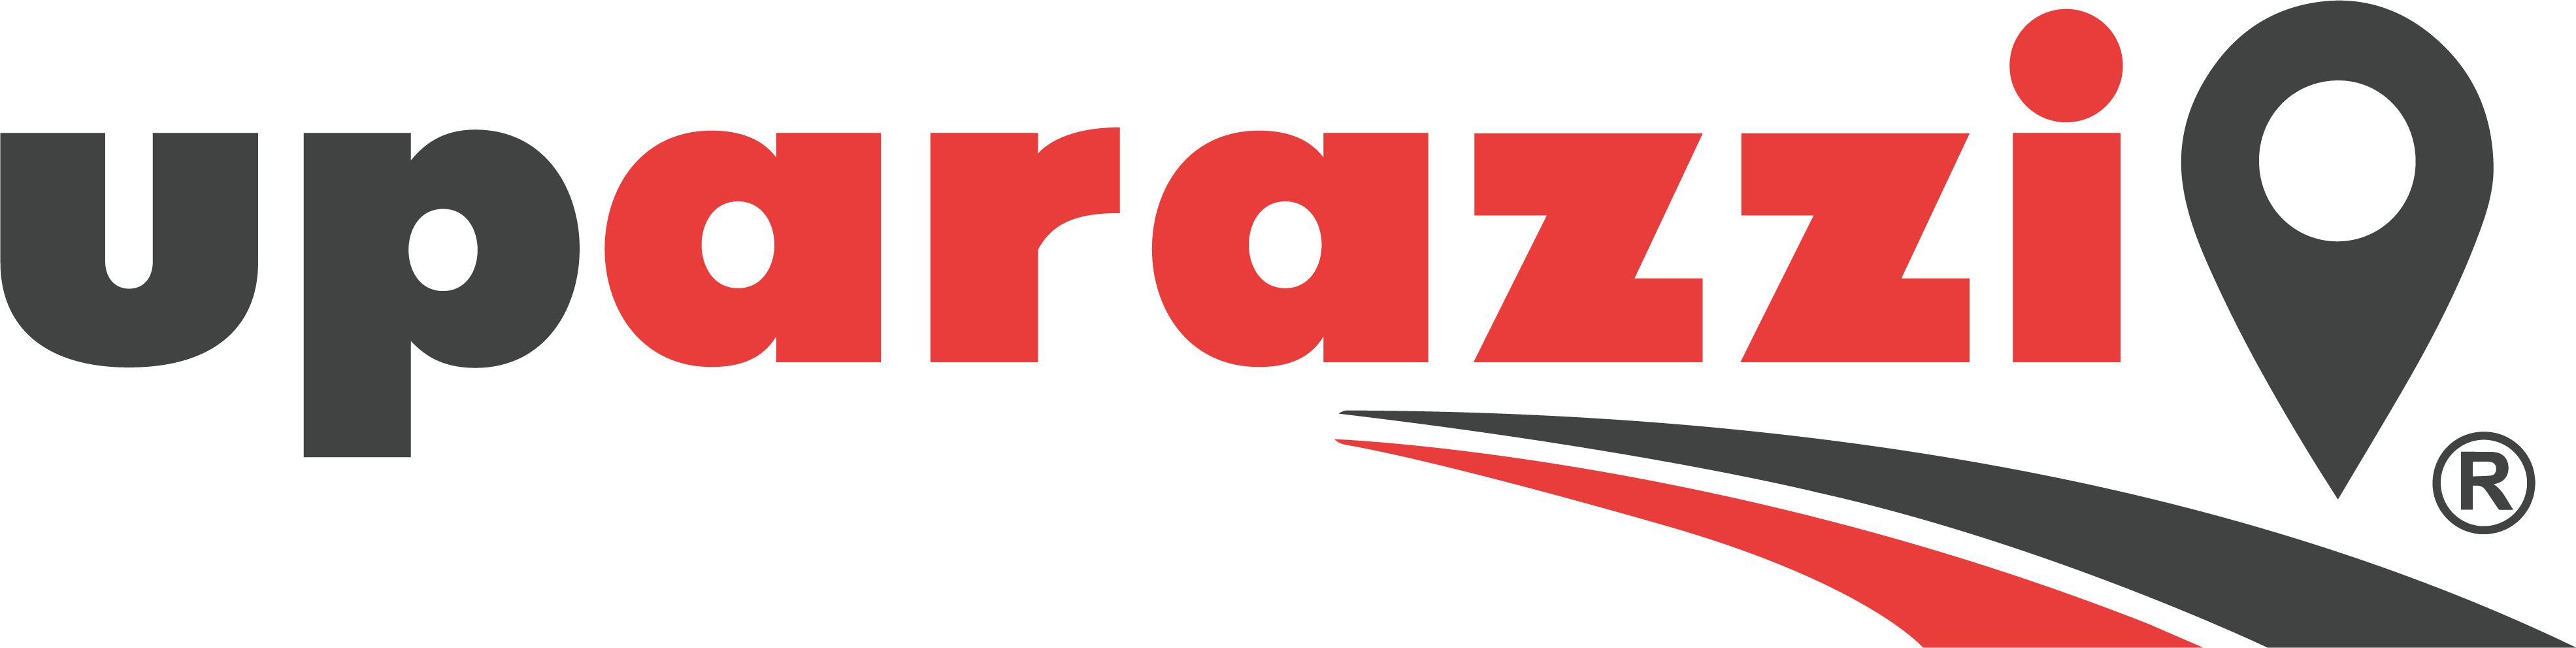 UpArazzi